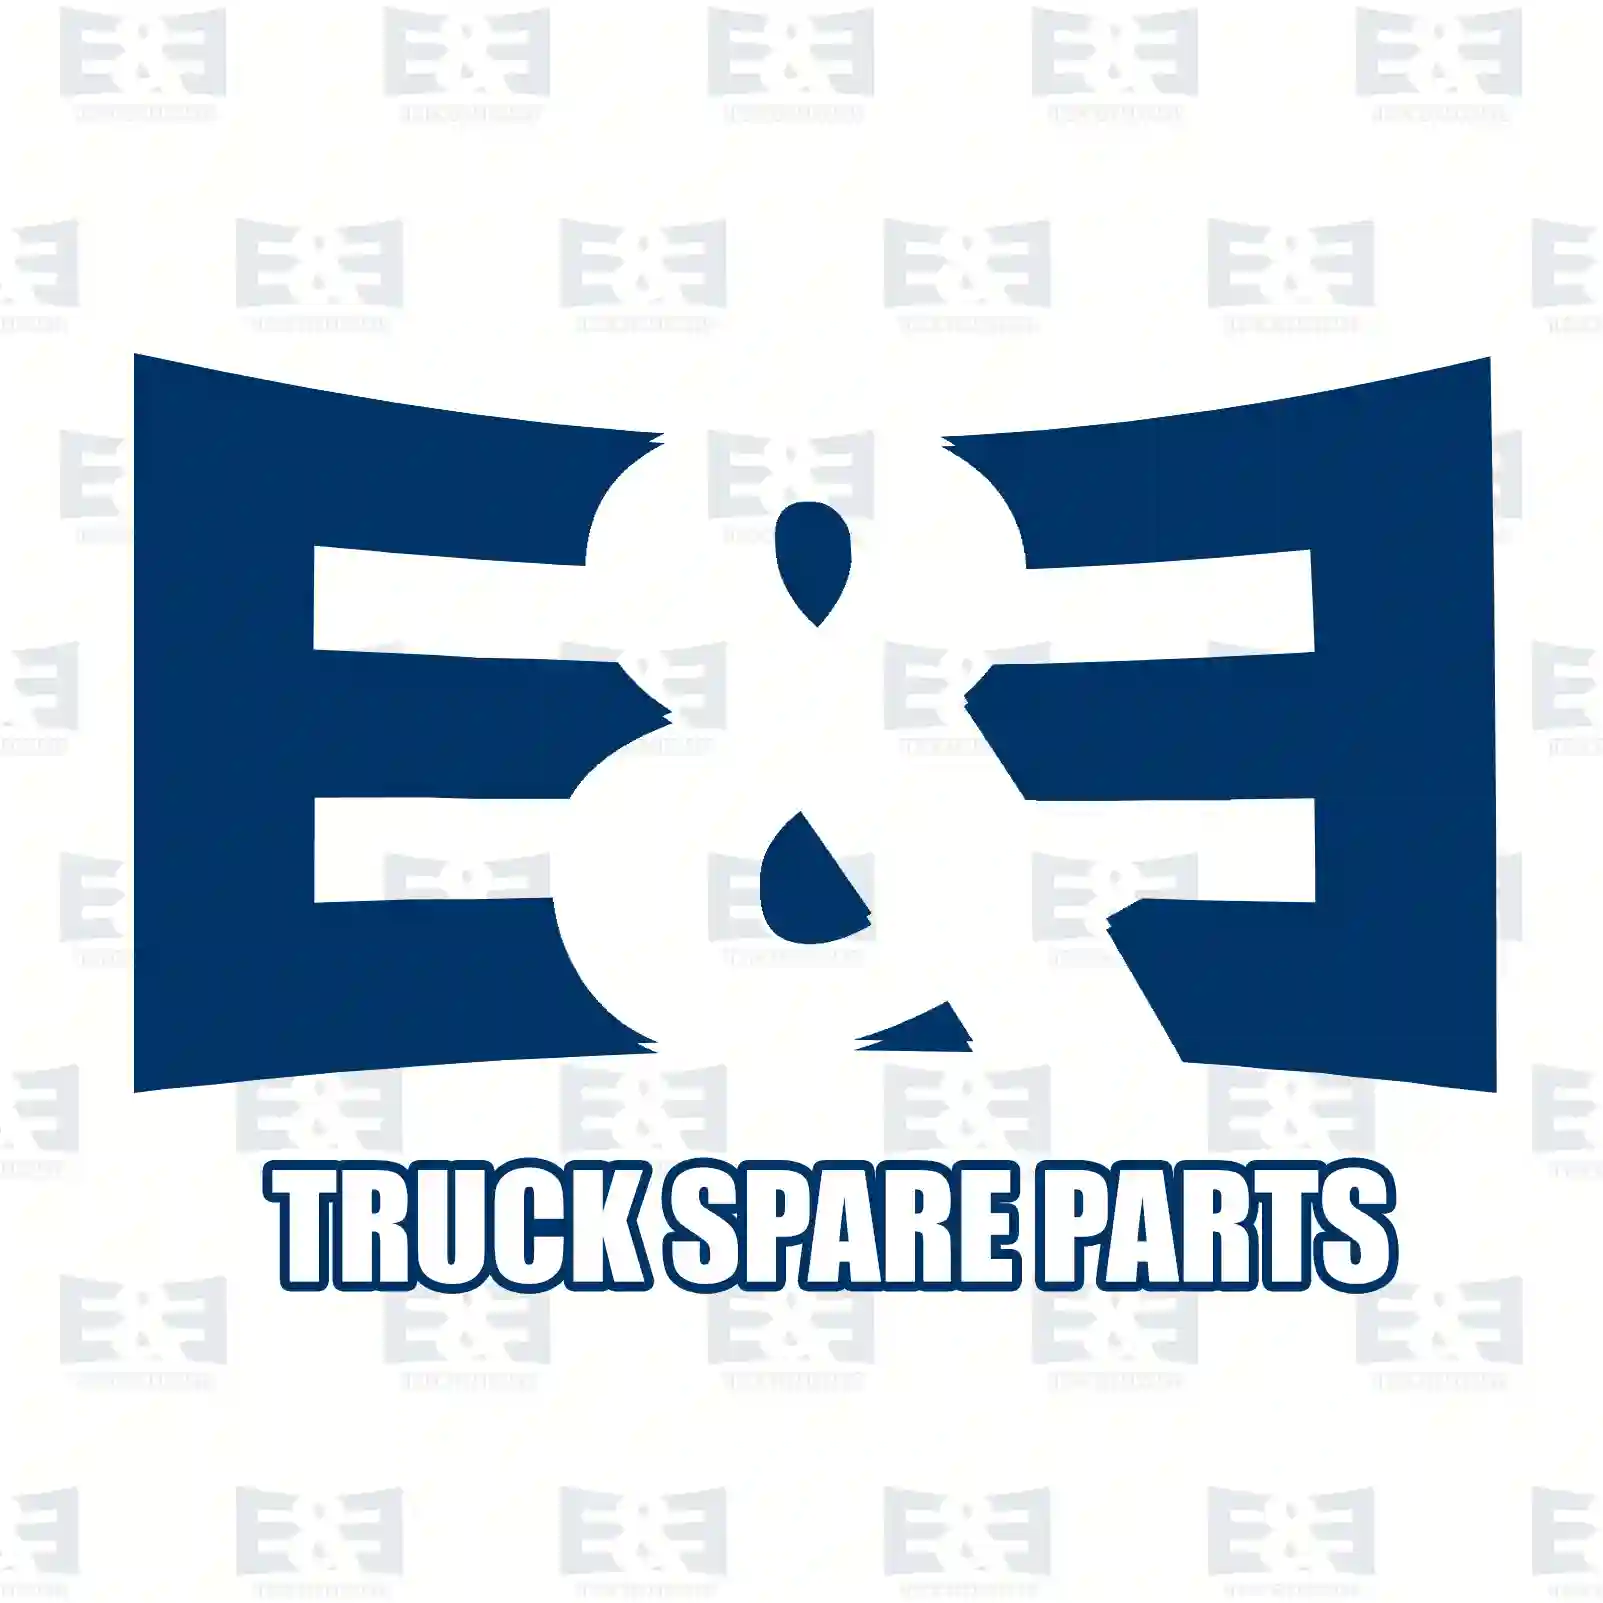 Gear shift lever, 2E2277717, 5010242949, 7421869820, 20561212, 21869820 ||  2E2277717 E&E Truck Spare Parts | Truck Spare Parts, Auotomotive Spare Parts Gear shift lever, 2E2277717, 5010242949, 7421869820, 20561212, 21869820 ||  2E2277717 E&E Truck Spare Parts | Truck Spare Parts, Auotomotive Spare Parts